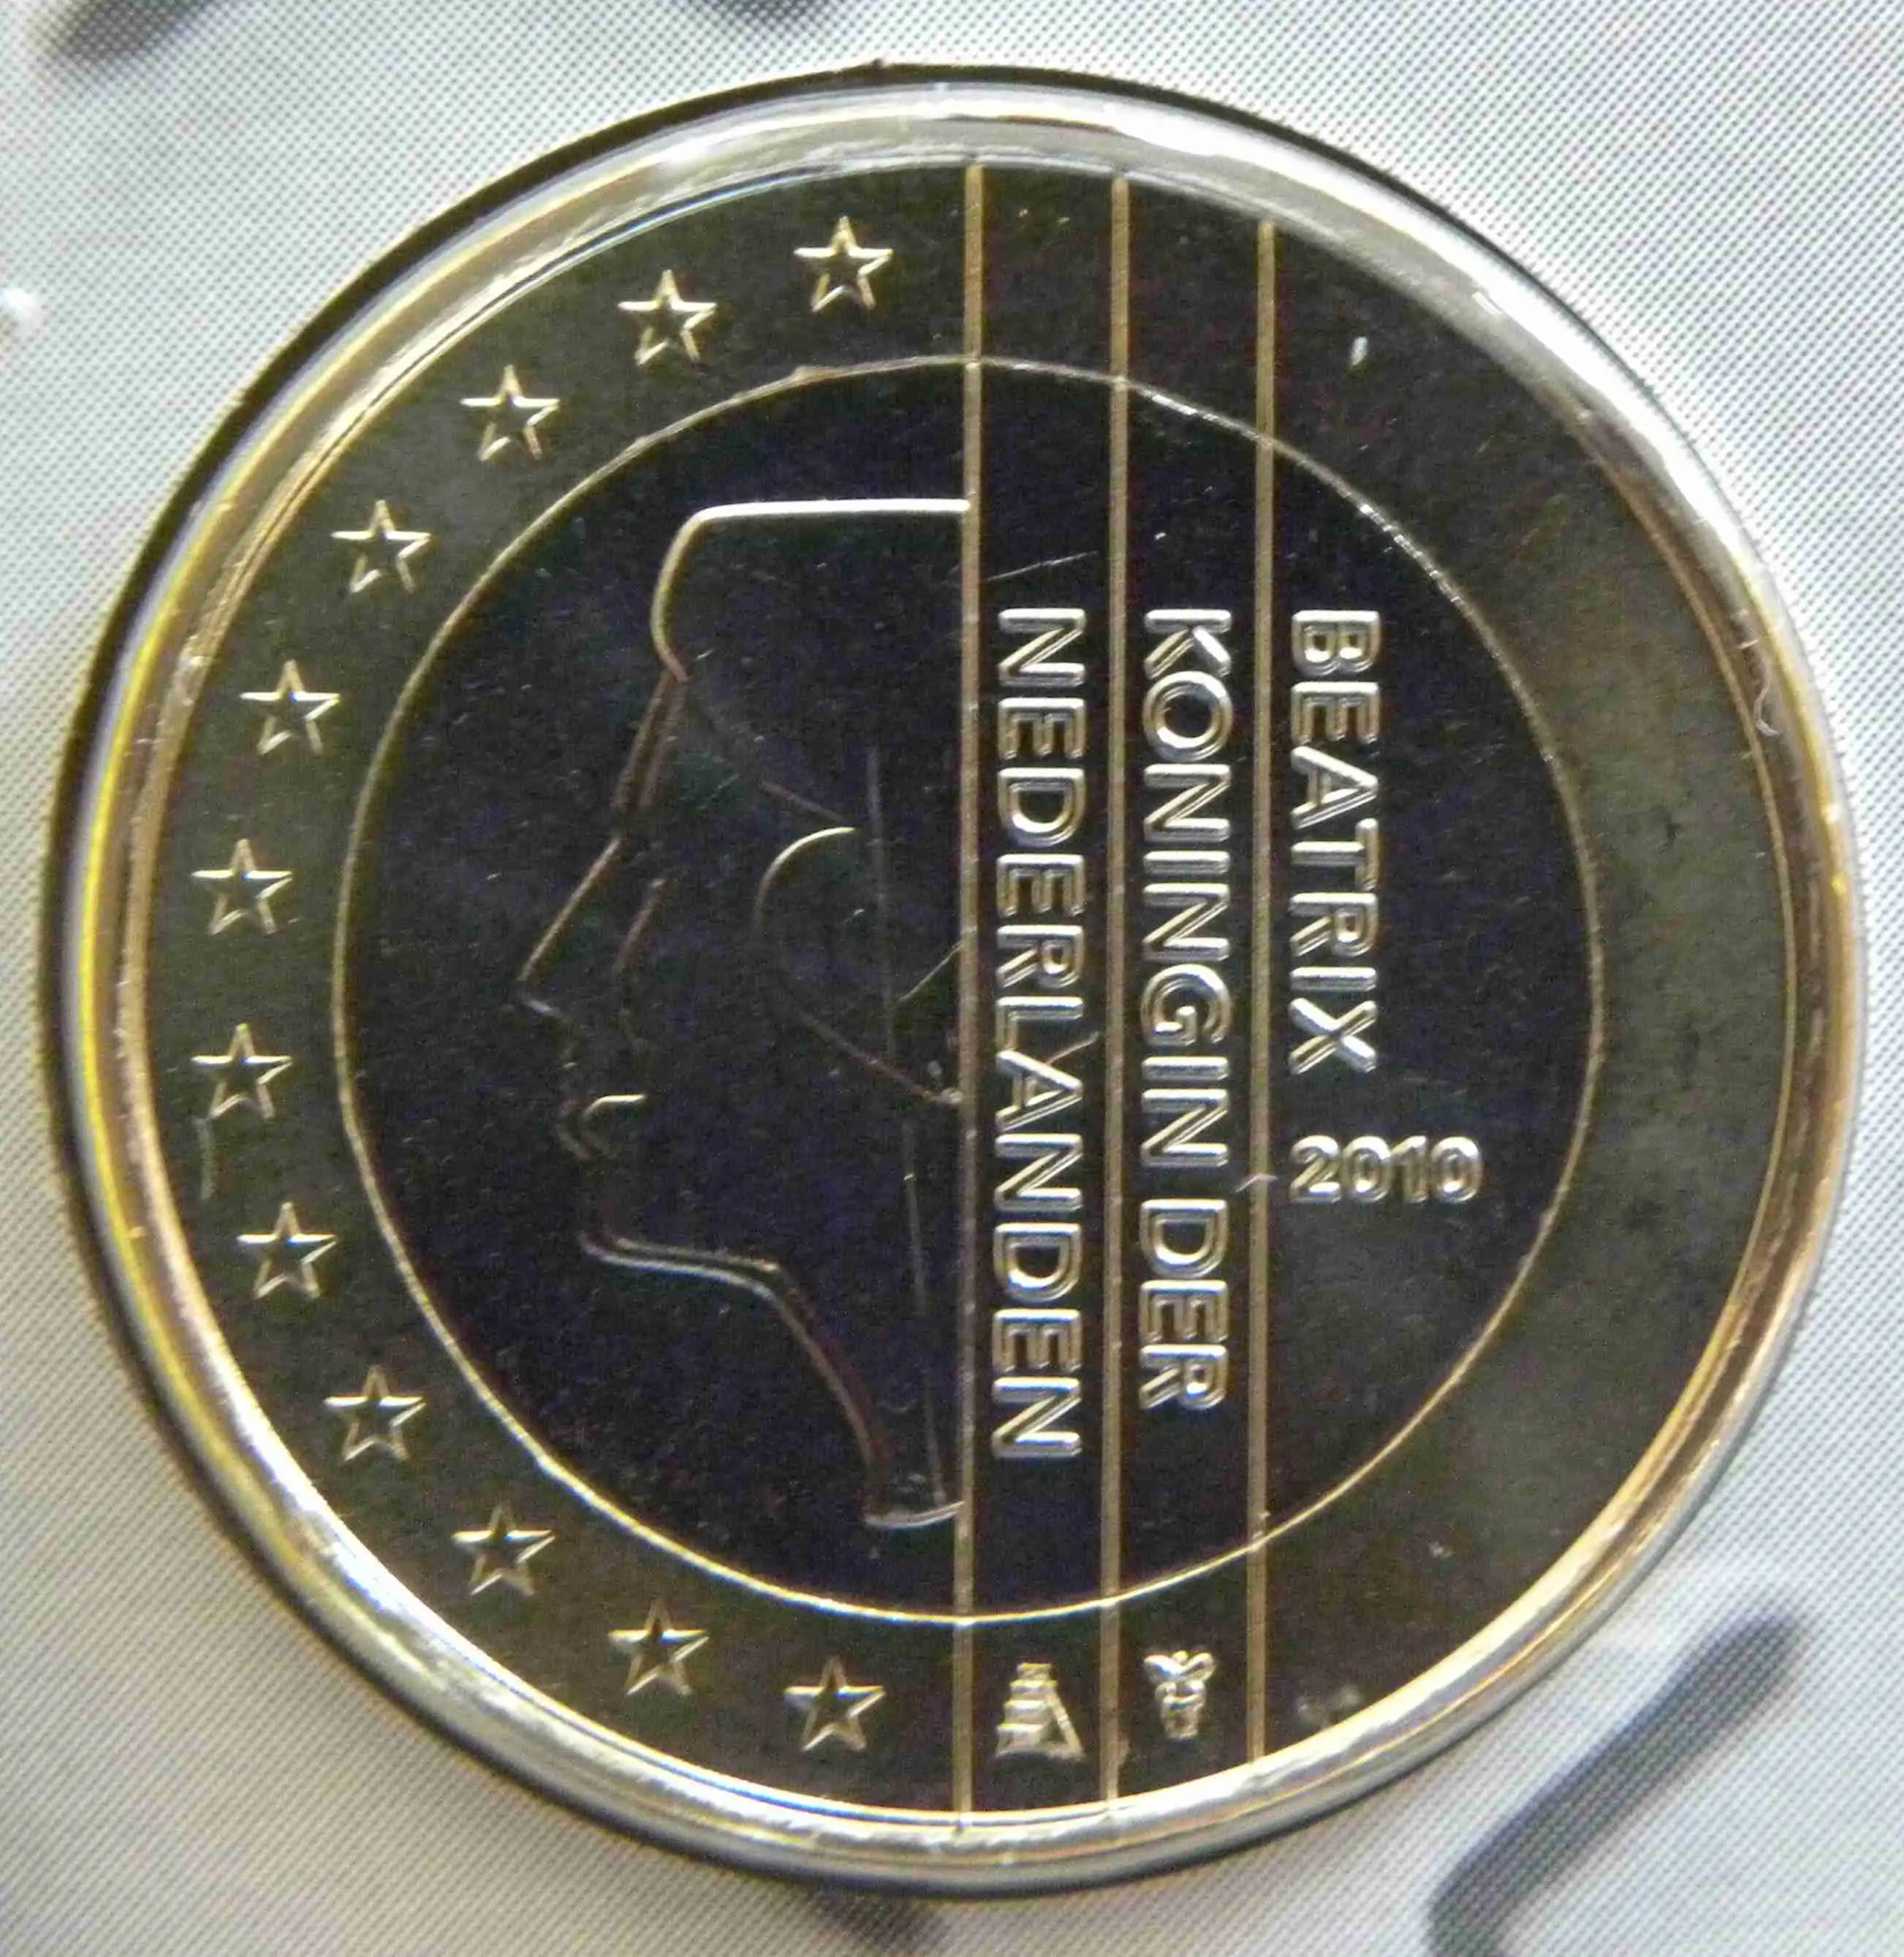 Niederlande 1 Euro Münze 2010 - euro-muenzen.tv - Der Online Euromünzen